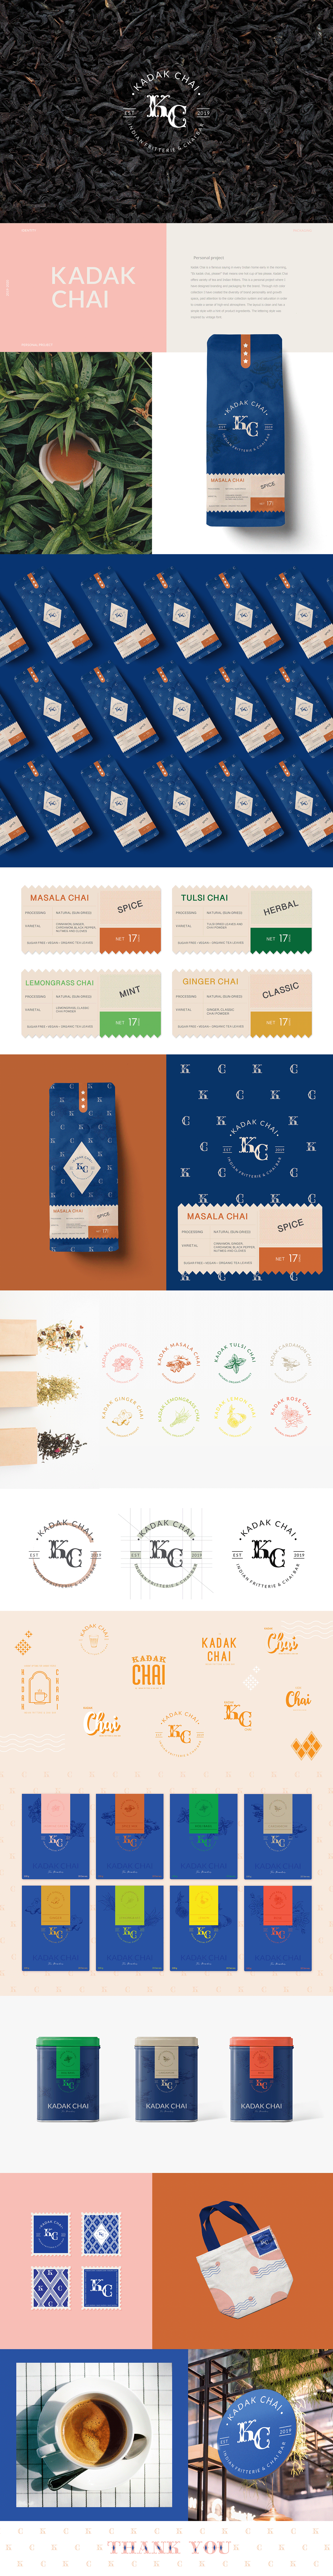 branding  Coffee Packaging tea visual identity teabranding teapackaging Logotype adobe illustrator visualbranding